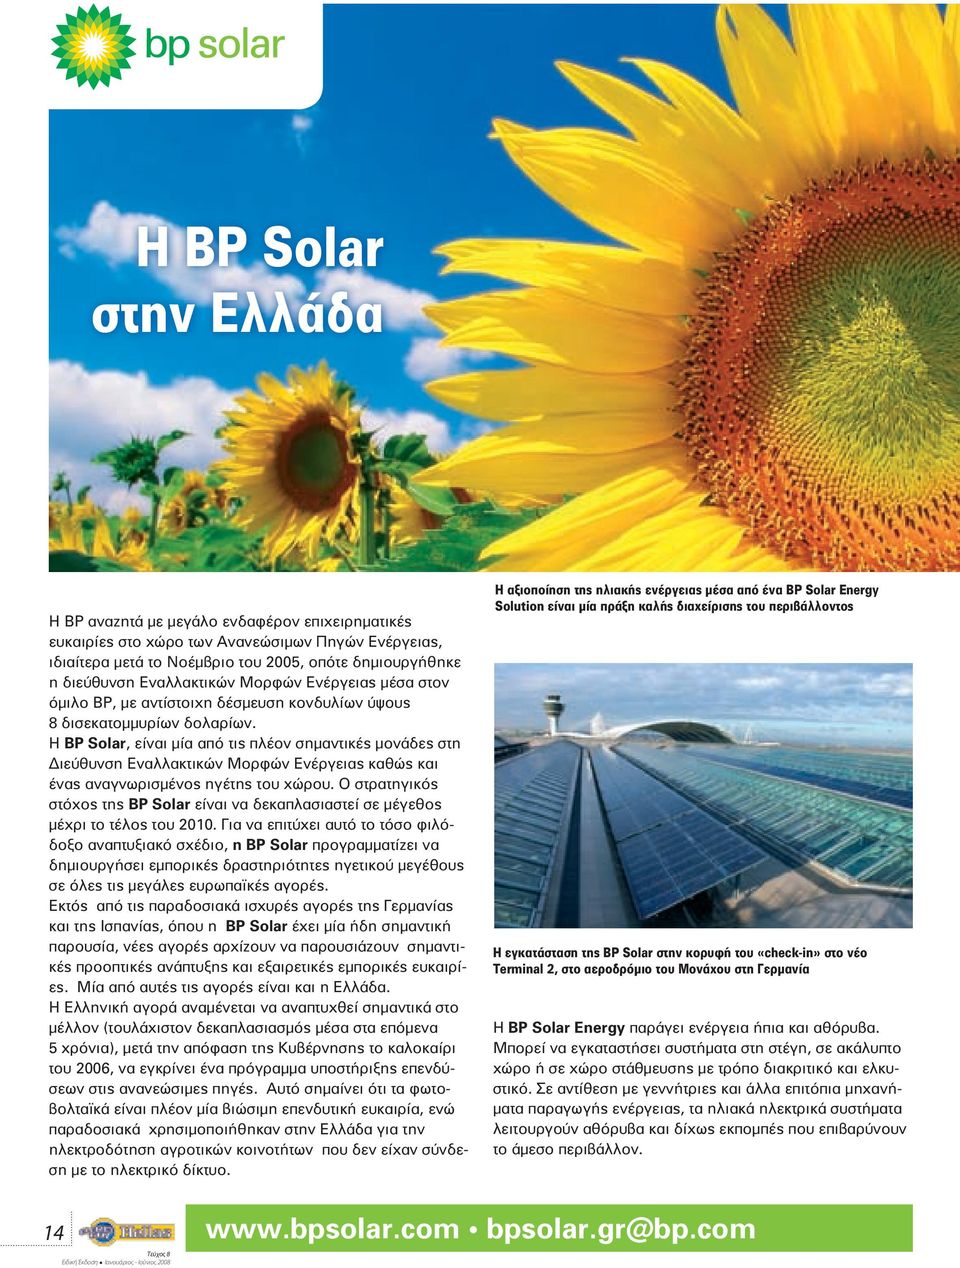 Η BP Solar, είναι μία από τις πλέον σημαντικές μονάδες στη Διεύθυνση Εναλλακτικών Μορφών Ενέργειας καθώς και ένας αναγνωρισμένος ηγέτης του χώρου.